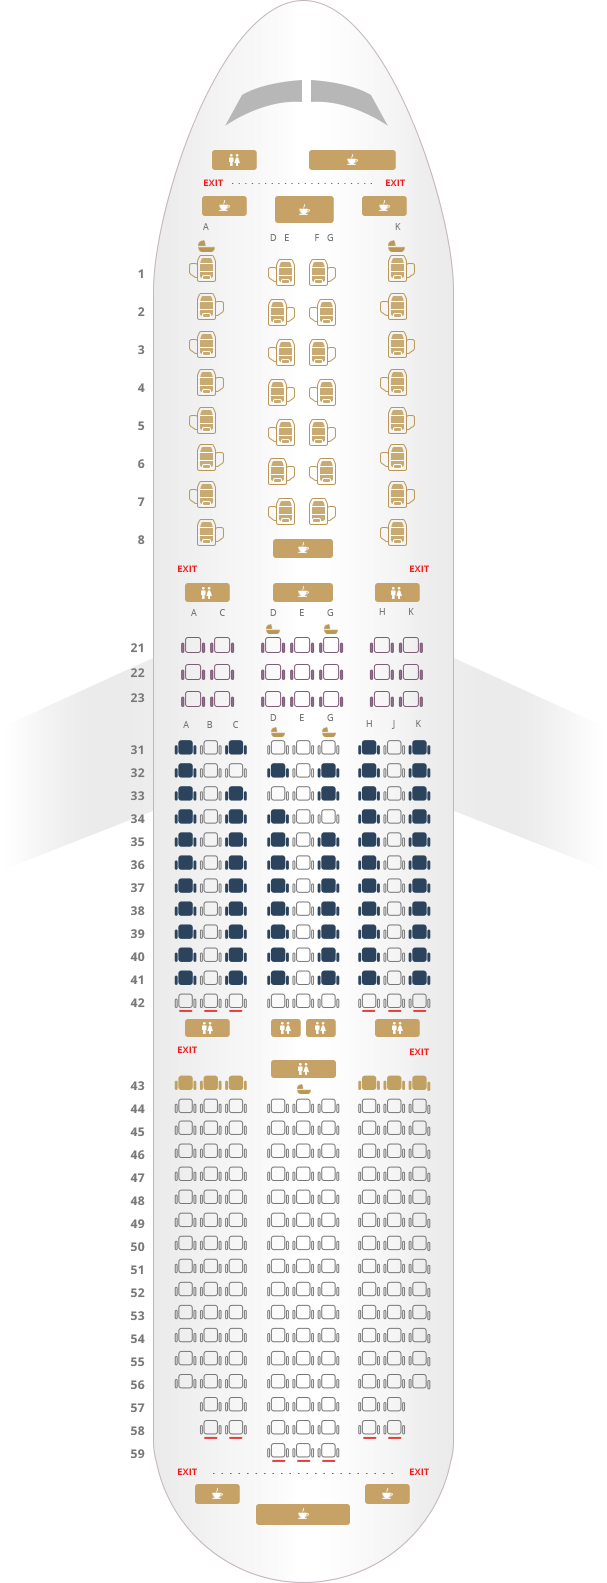 seating plan for 787 9